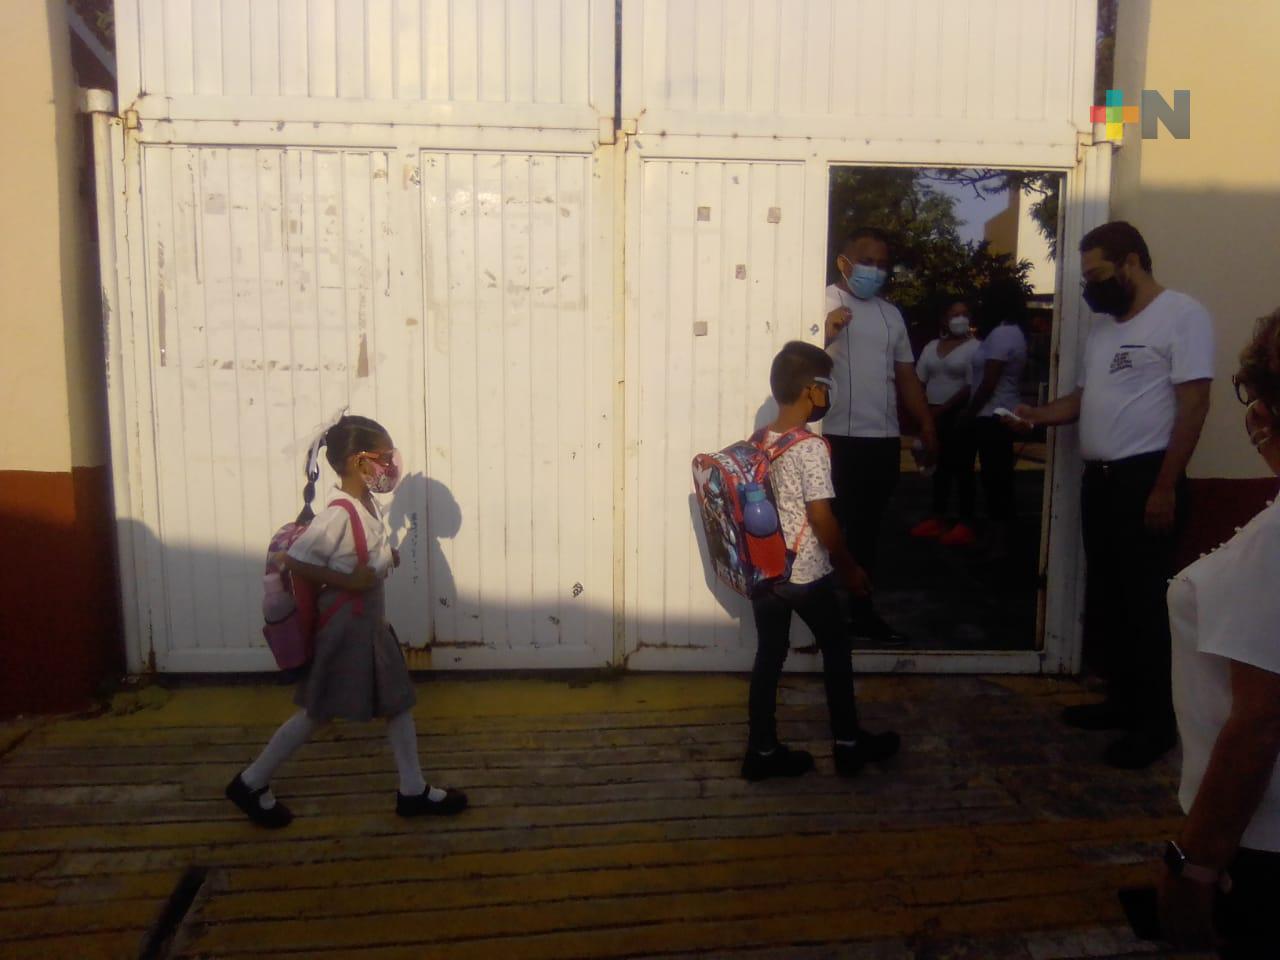 Cerraron 99 escuelas en el estado de Veracruz por contagios de Covid: SEV